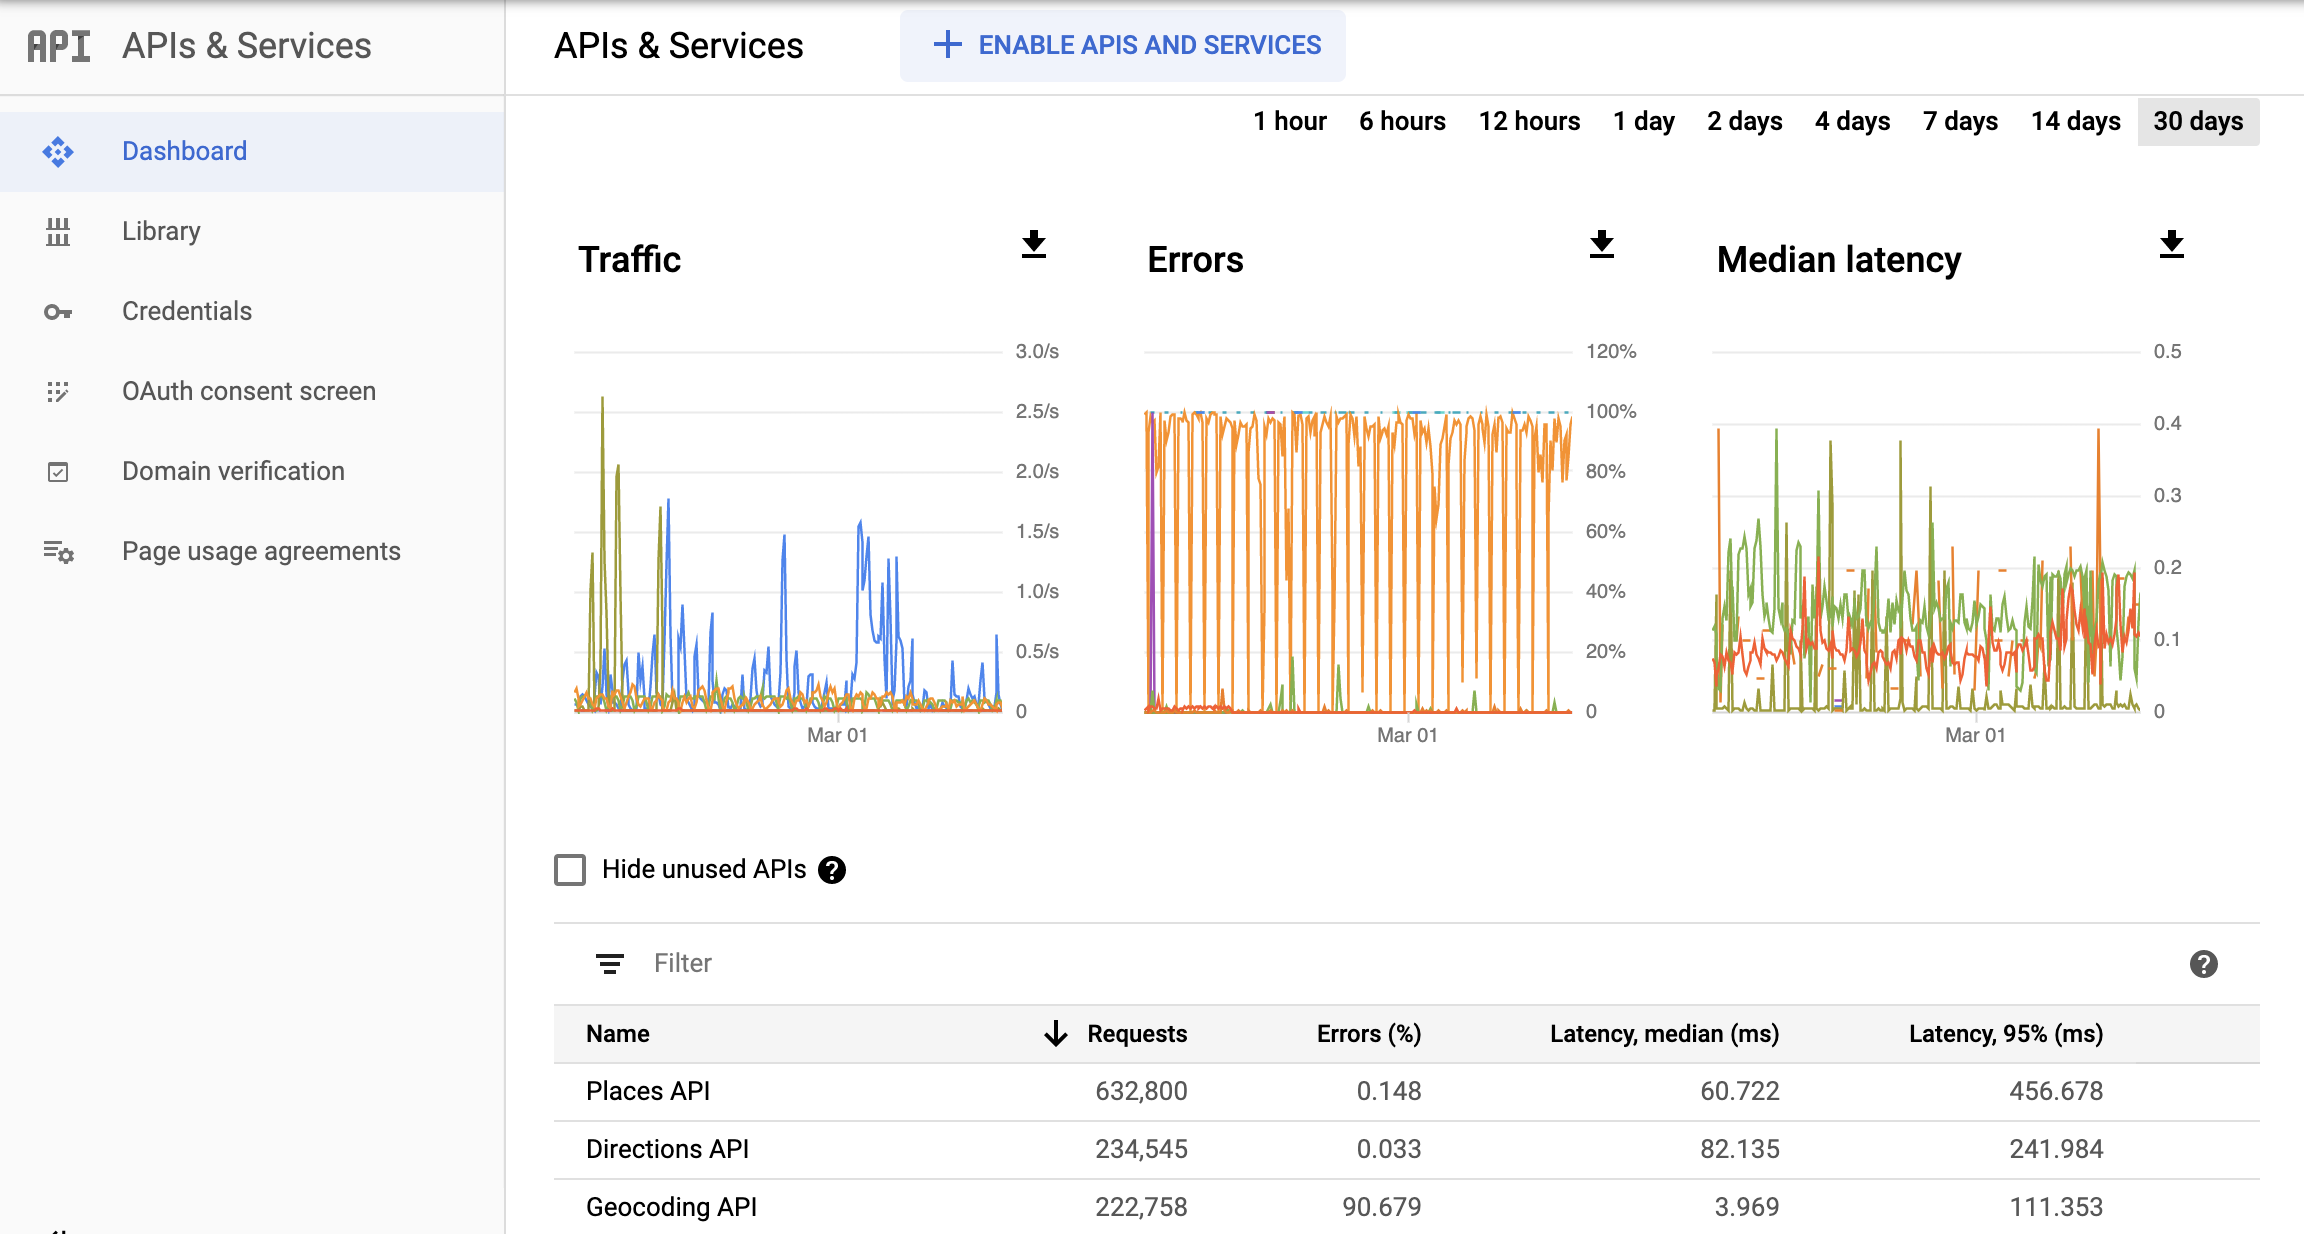 Captura de pantalla de la página APIs de Monitoring en la consola de Google Cloud, que muestra el panel de informes APIs y servicios (APIs & Services). Muestra gráficos separados de Tráfico (Traffic), Errores (Errors) y Latencia media (Median Latency). Estos gráficos pueden mostrar los datos correspondientes a períodos de entre una hora y 30 días.